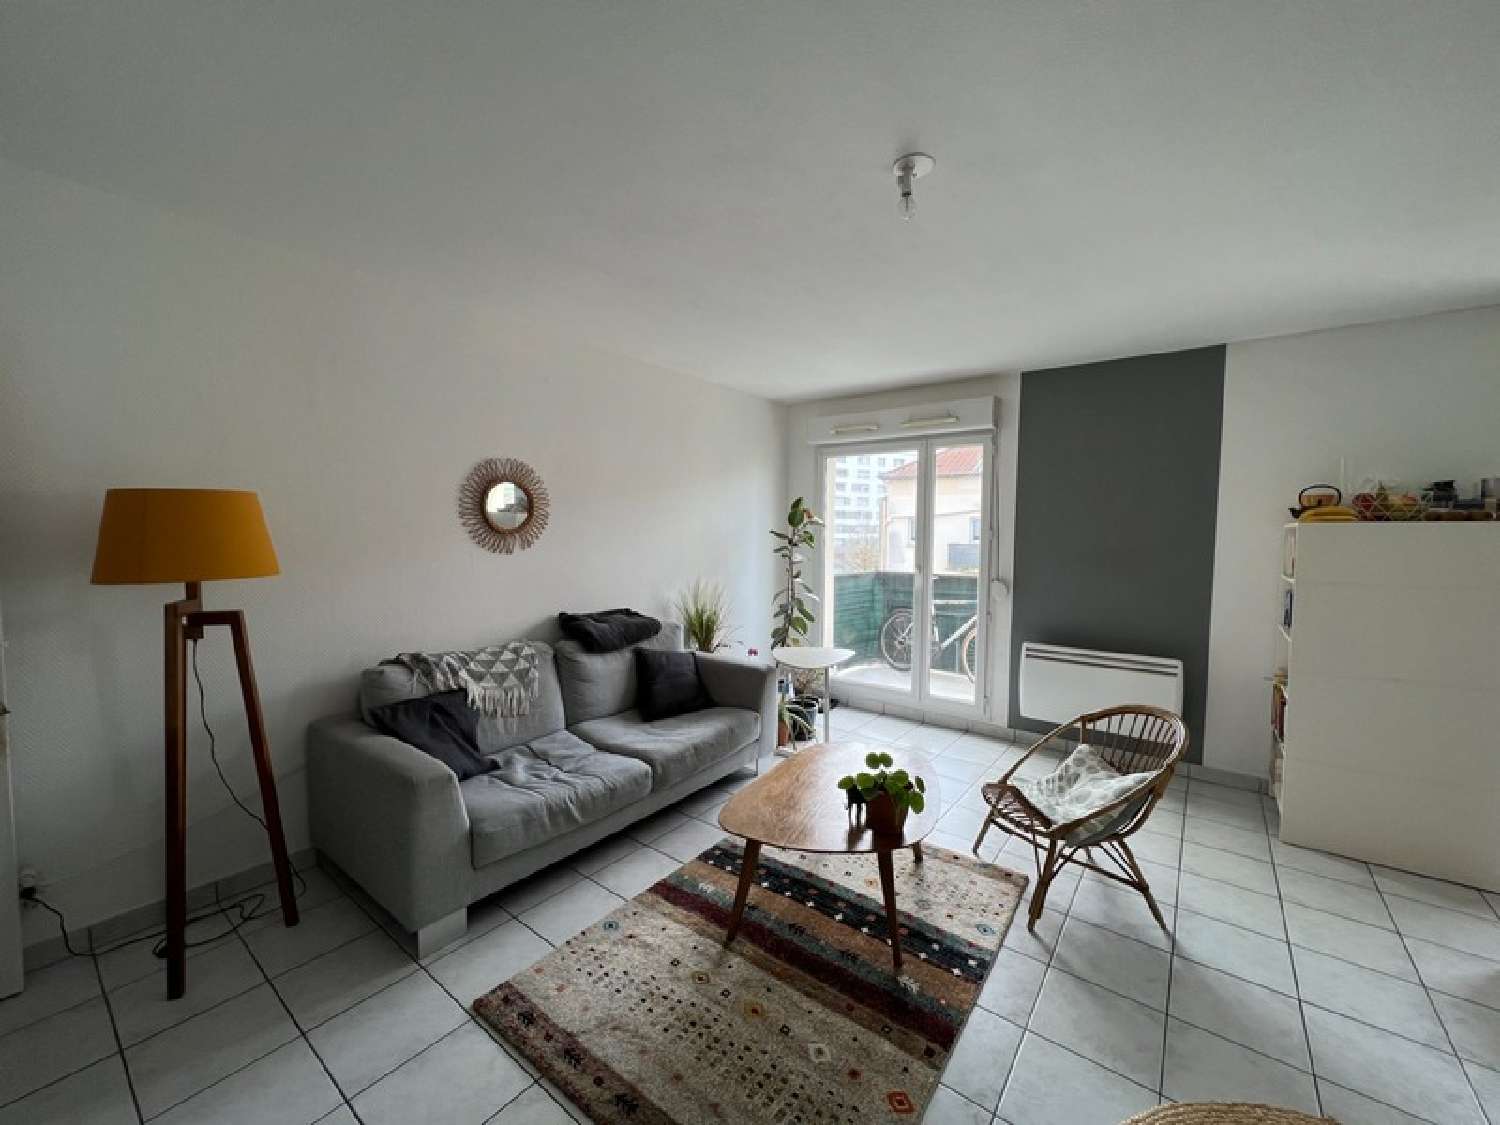  for sale apartment Essey-lès-Nancy Meurthe-et-Moselle 3